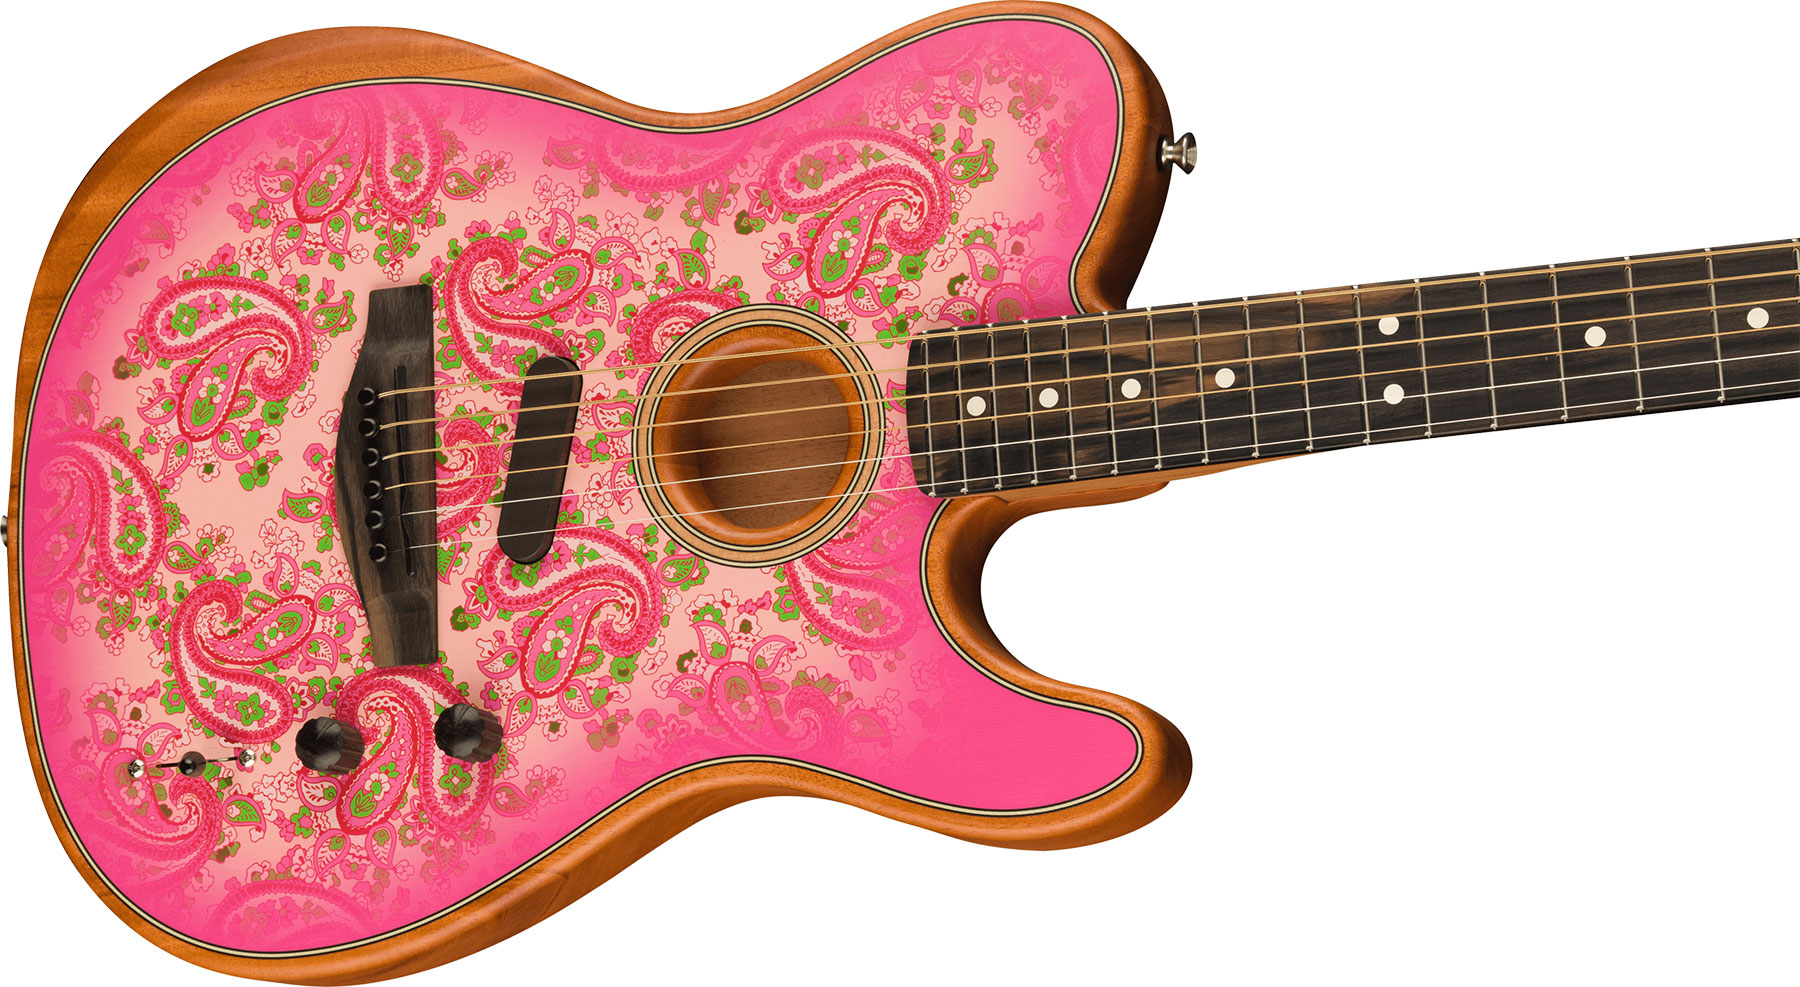 Fender American Acoustasonic Tele Fsr Ltd Epicea Acajou Rw - Pink Paisley - Guitarra acústica & electro - Variation 2